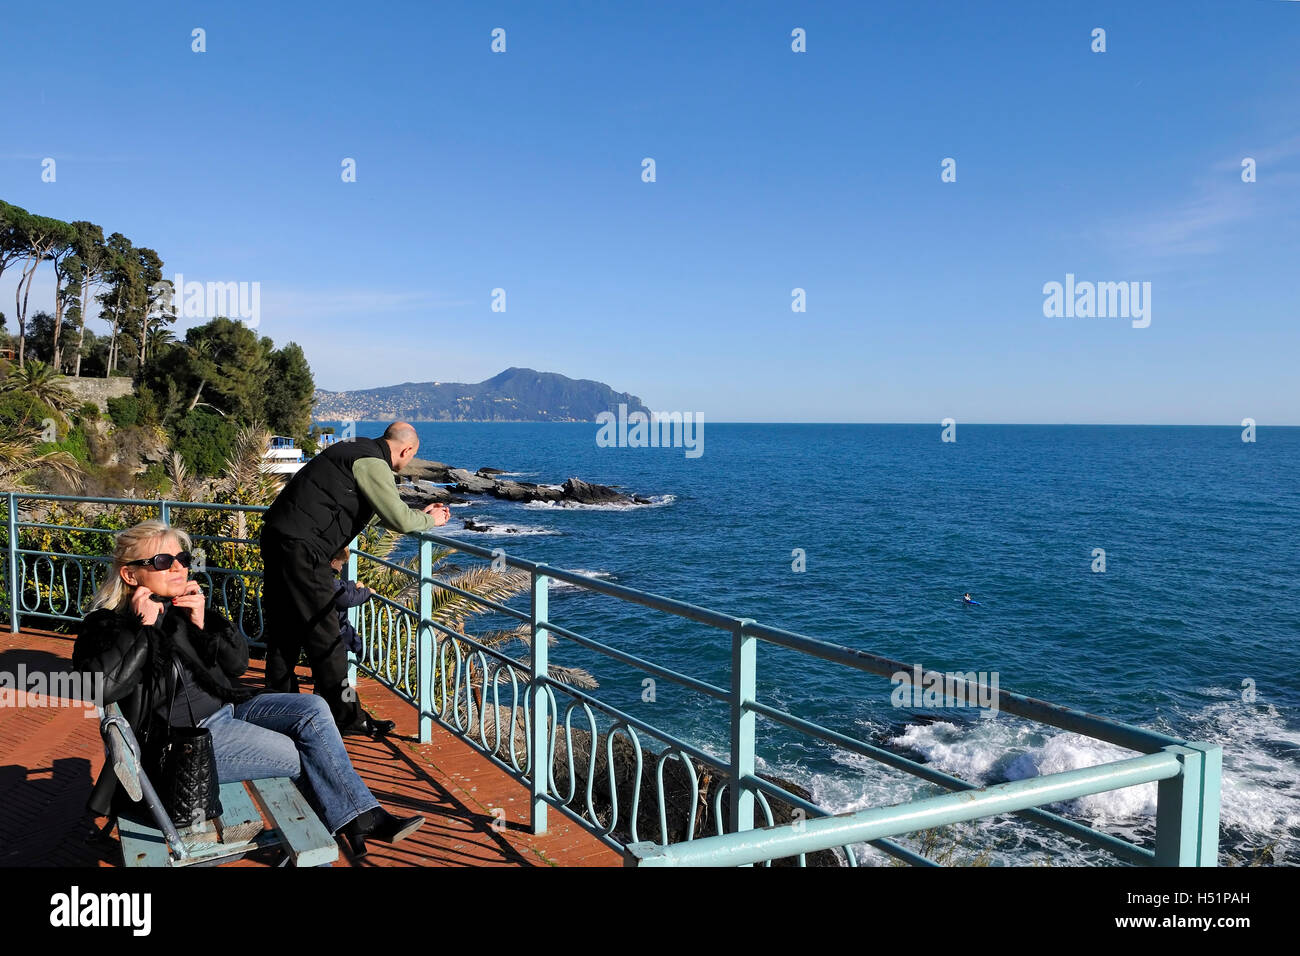 A view on the  Passeggiata Anita Garibaldi path on the sea, Nervi, Ligury, Italy, Europe Stock Photo